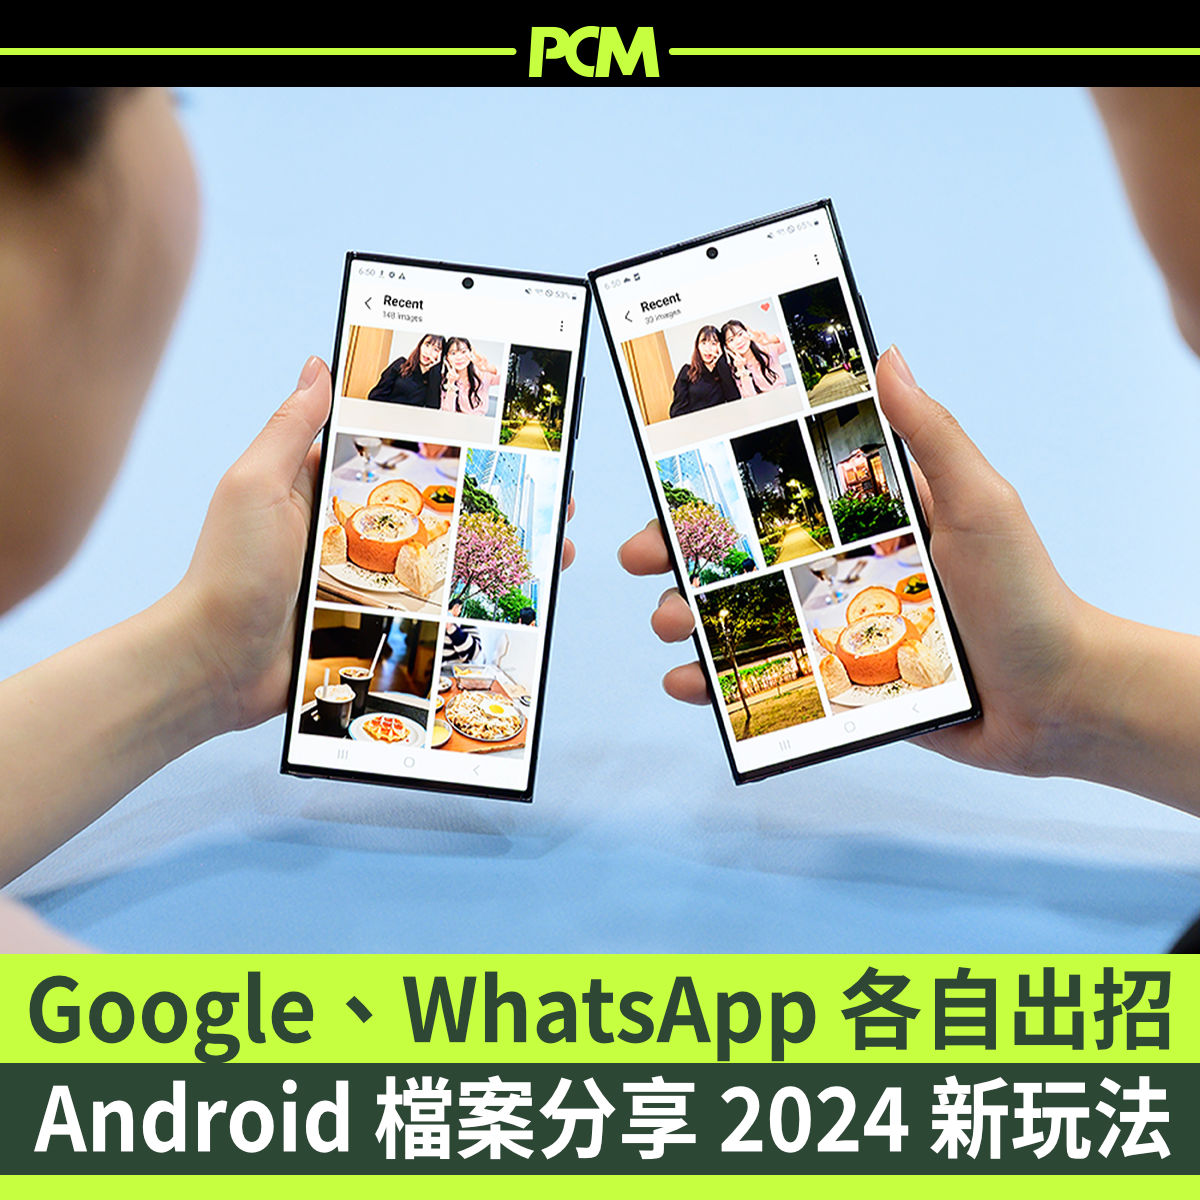 踏入 2024 冇幾多日，Google+Samsung 聯盟與 Meta 的 WhatsApp 就各自喺檔案分享方面出招，2024 年 Android 平台檔案分享會有新玩法。各有乜嘢特點？幾時出？去呢度溫定書先啦：wp.me/pdQc5k-1uIE
#Android #Google #Samsung #快速共享 #WhatsApp #PeopleNearby